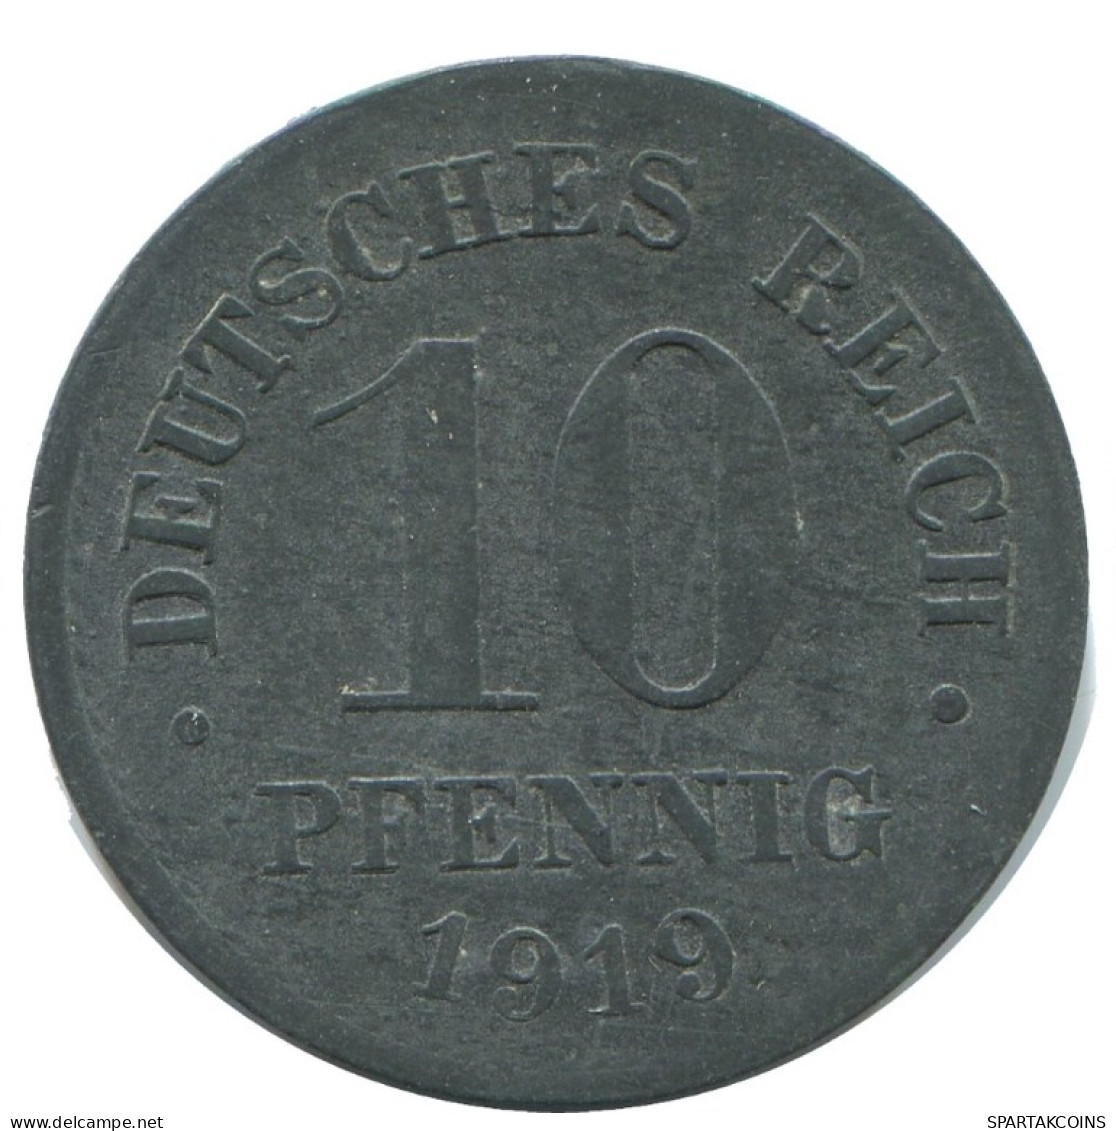 10 PFENNIG 1919 GERMANY Coin #AD529.9.U.A - 10 Rentenpfennig & 10 Reichspfennig